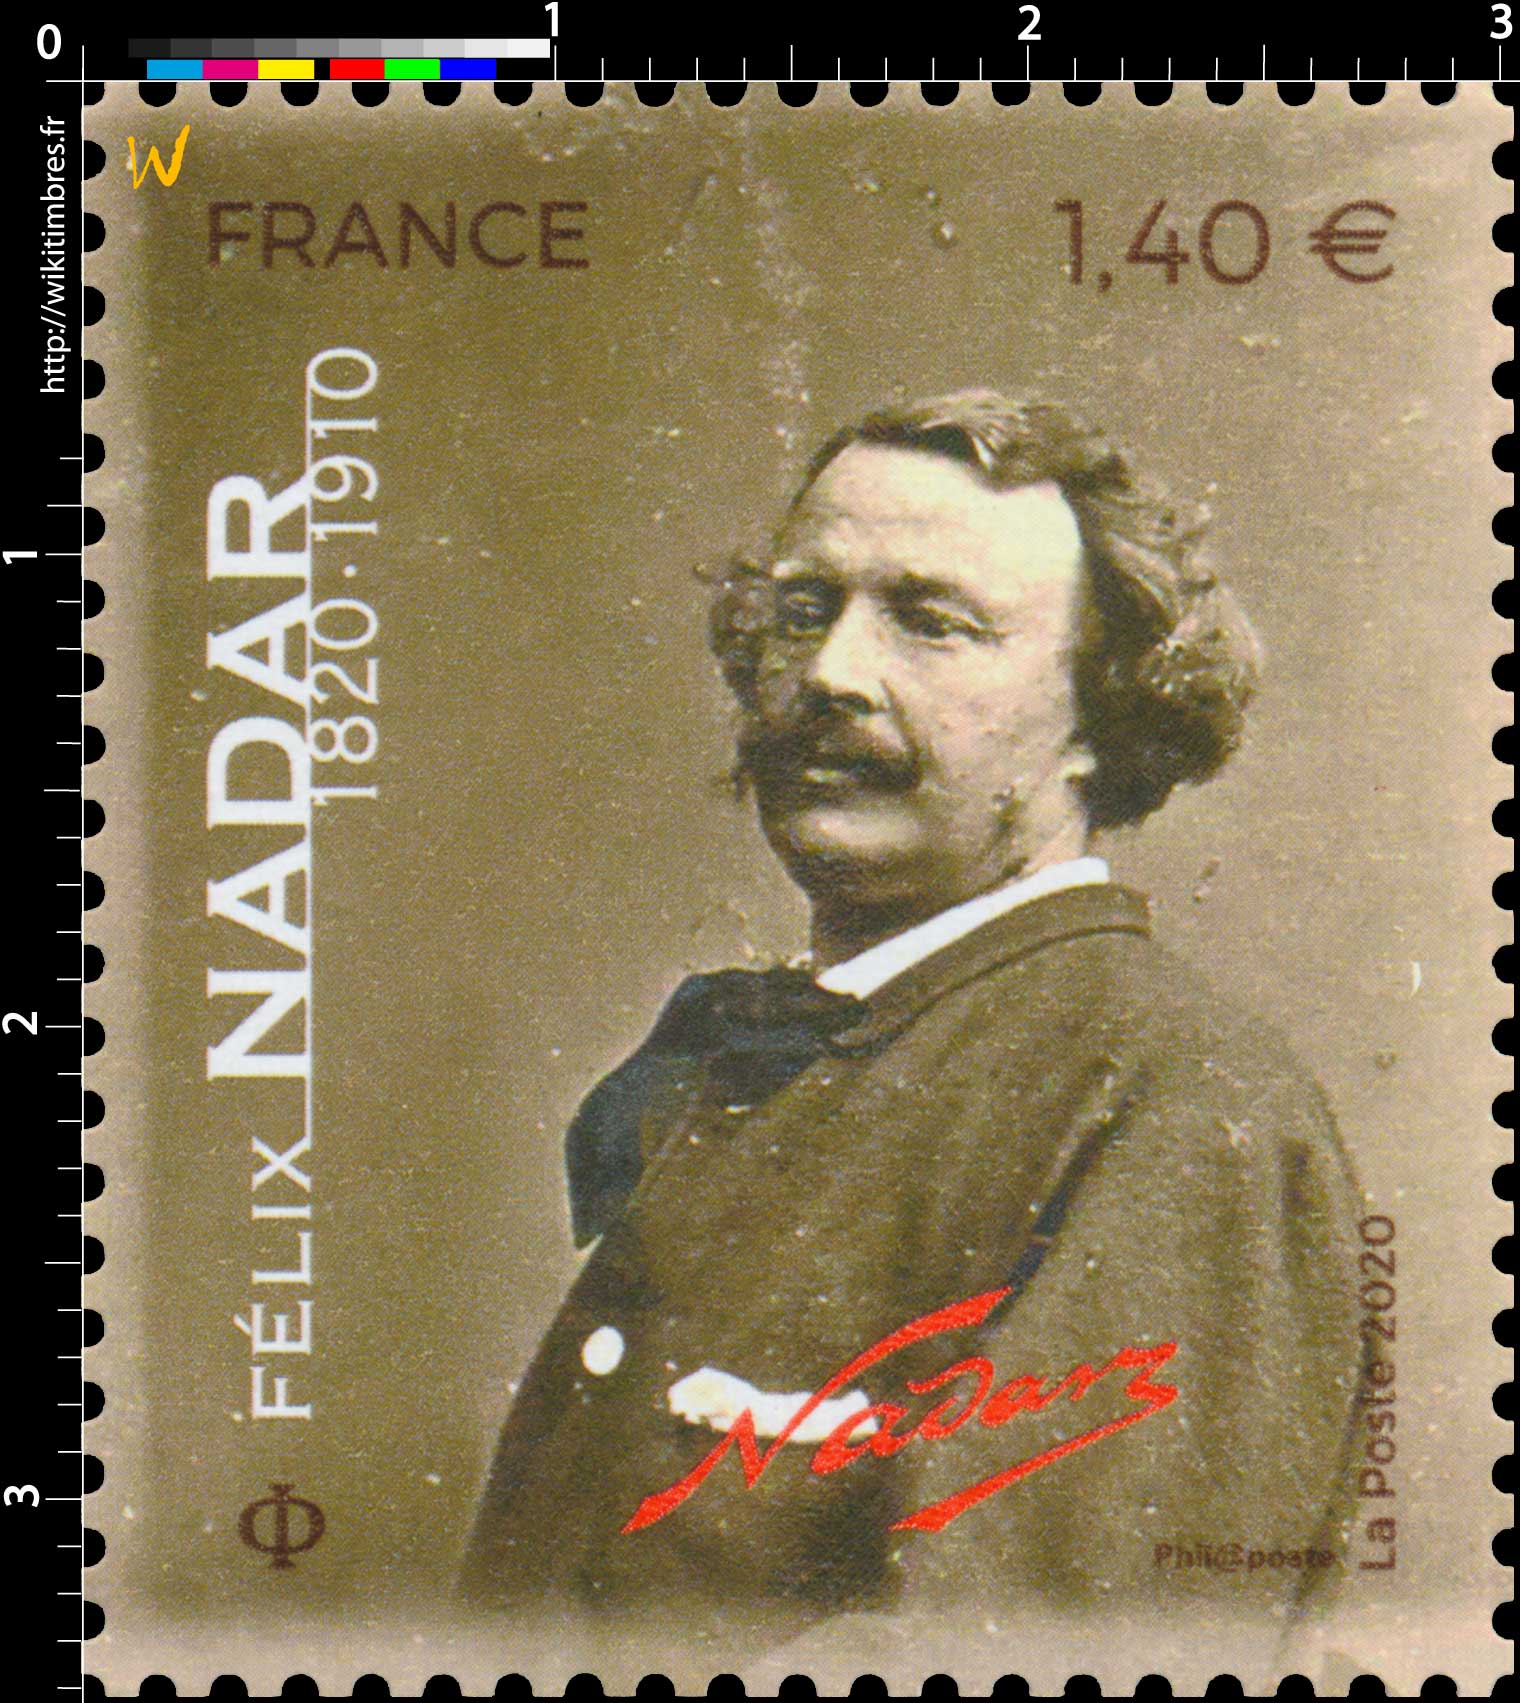 2020 Félix Nadar 1820 - 1910